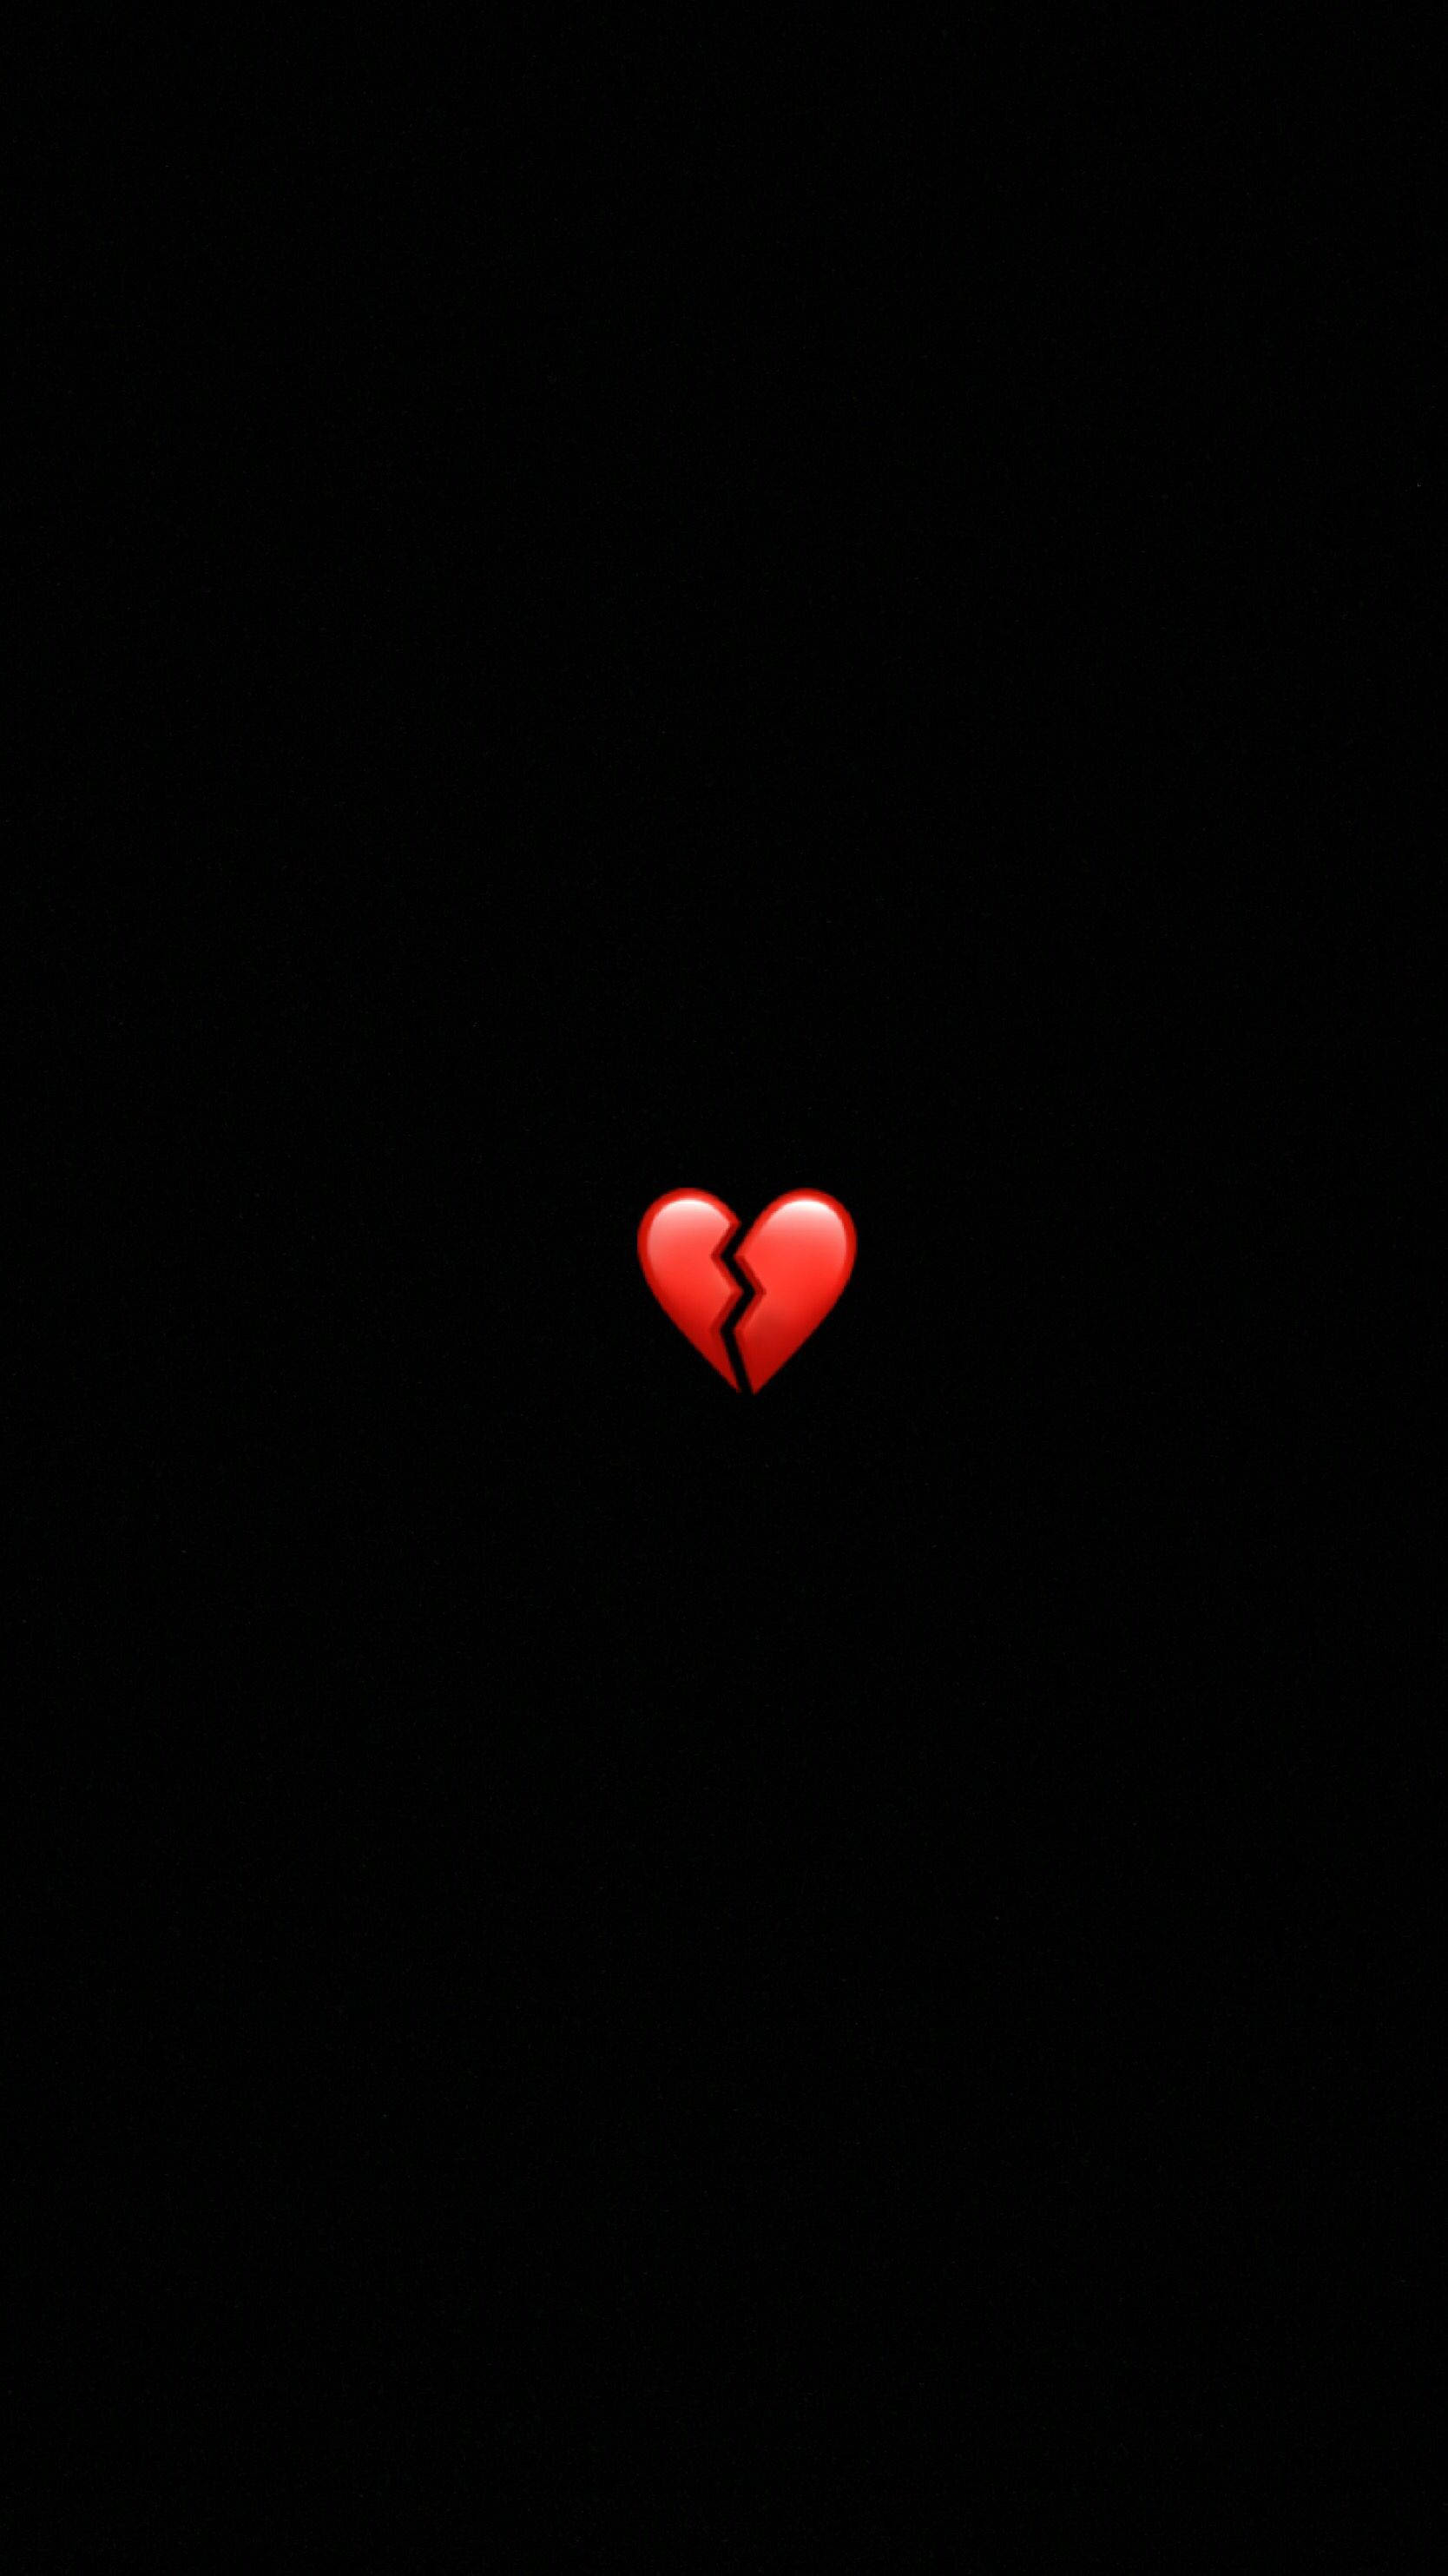 Hình nền trái tim đỏ đơn giản là lựa chọn tuyệt vời cho những người yêu thích sự tối giản và đơn giản. Với cách phối màu tinh tế, bức hình này sẽ làm bạn cảm thấy yên bình và thanh thản.